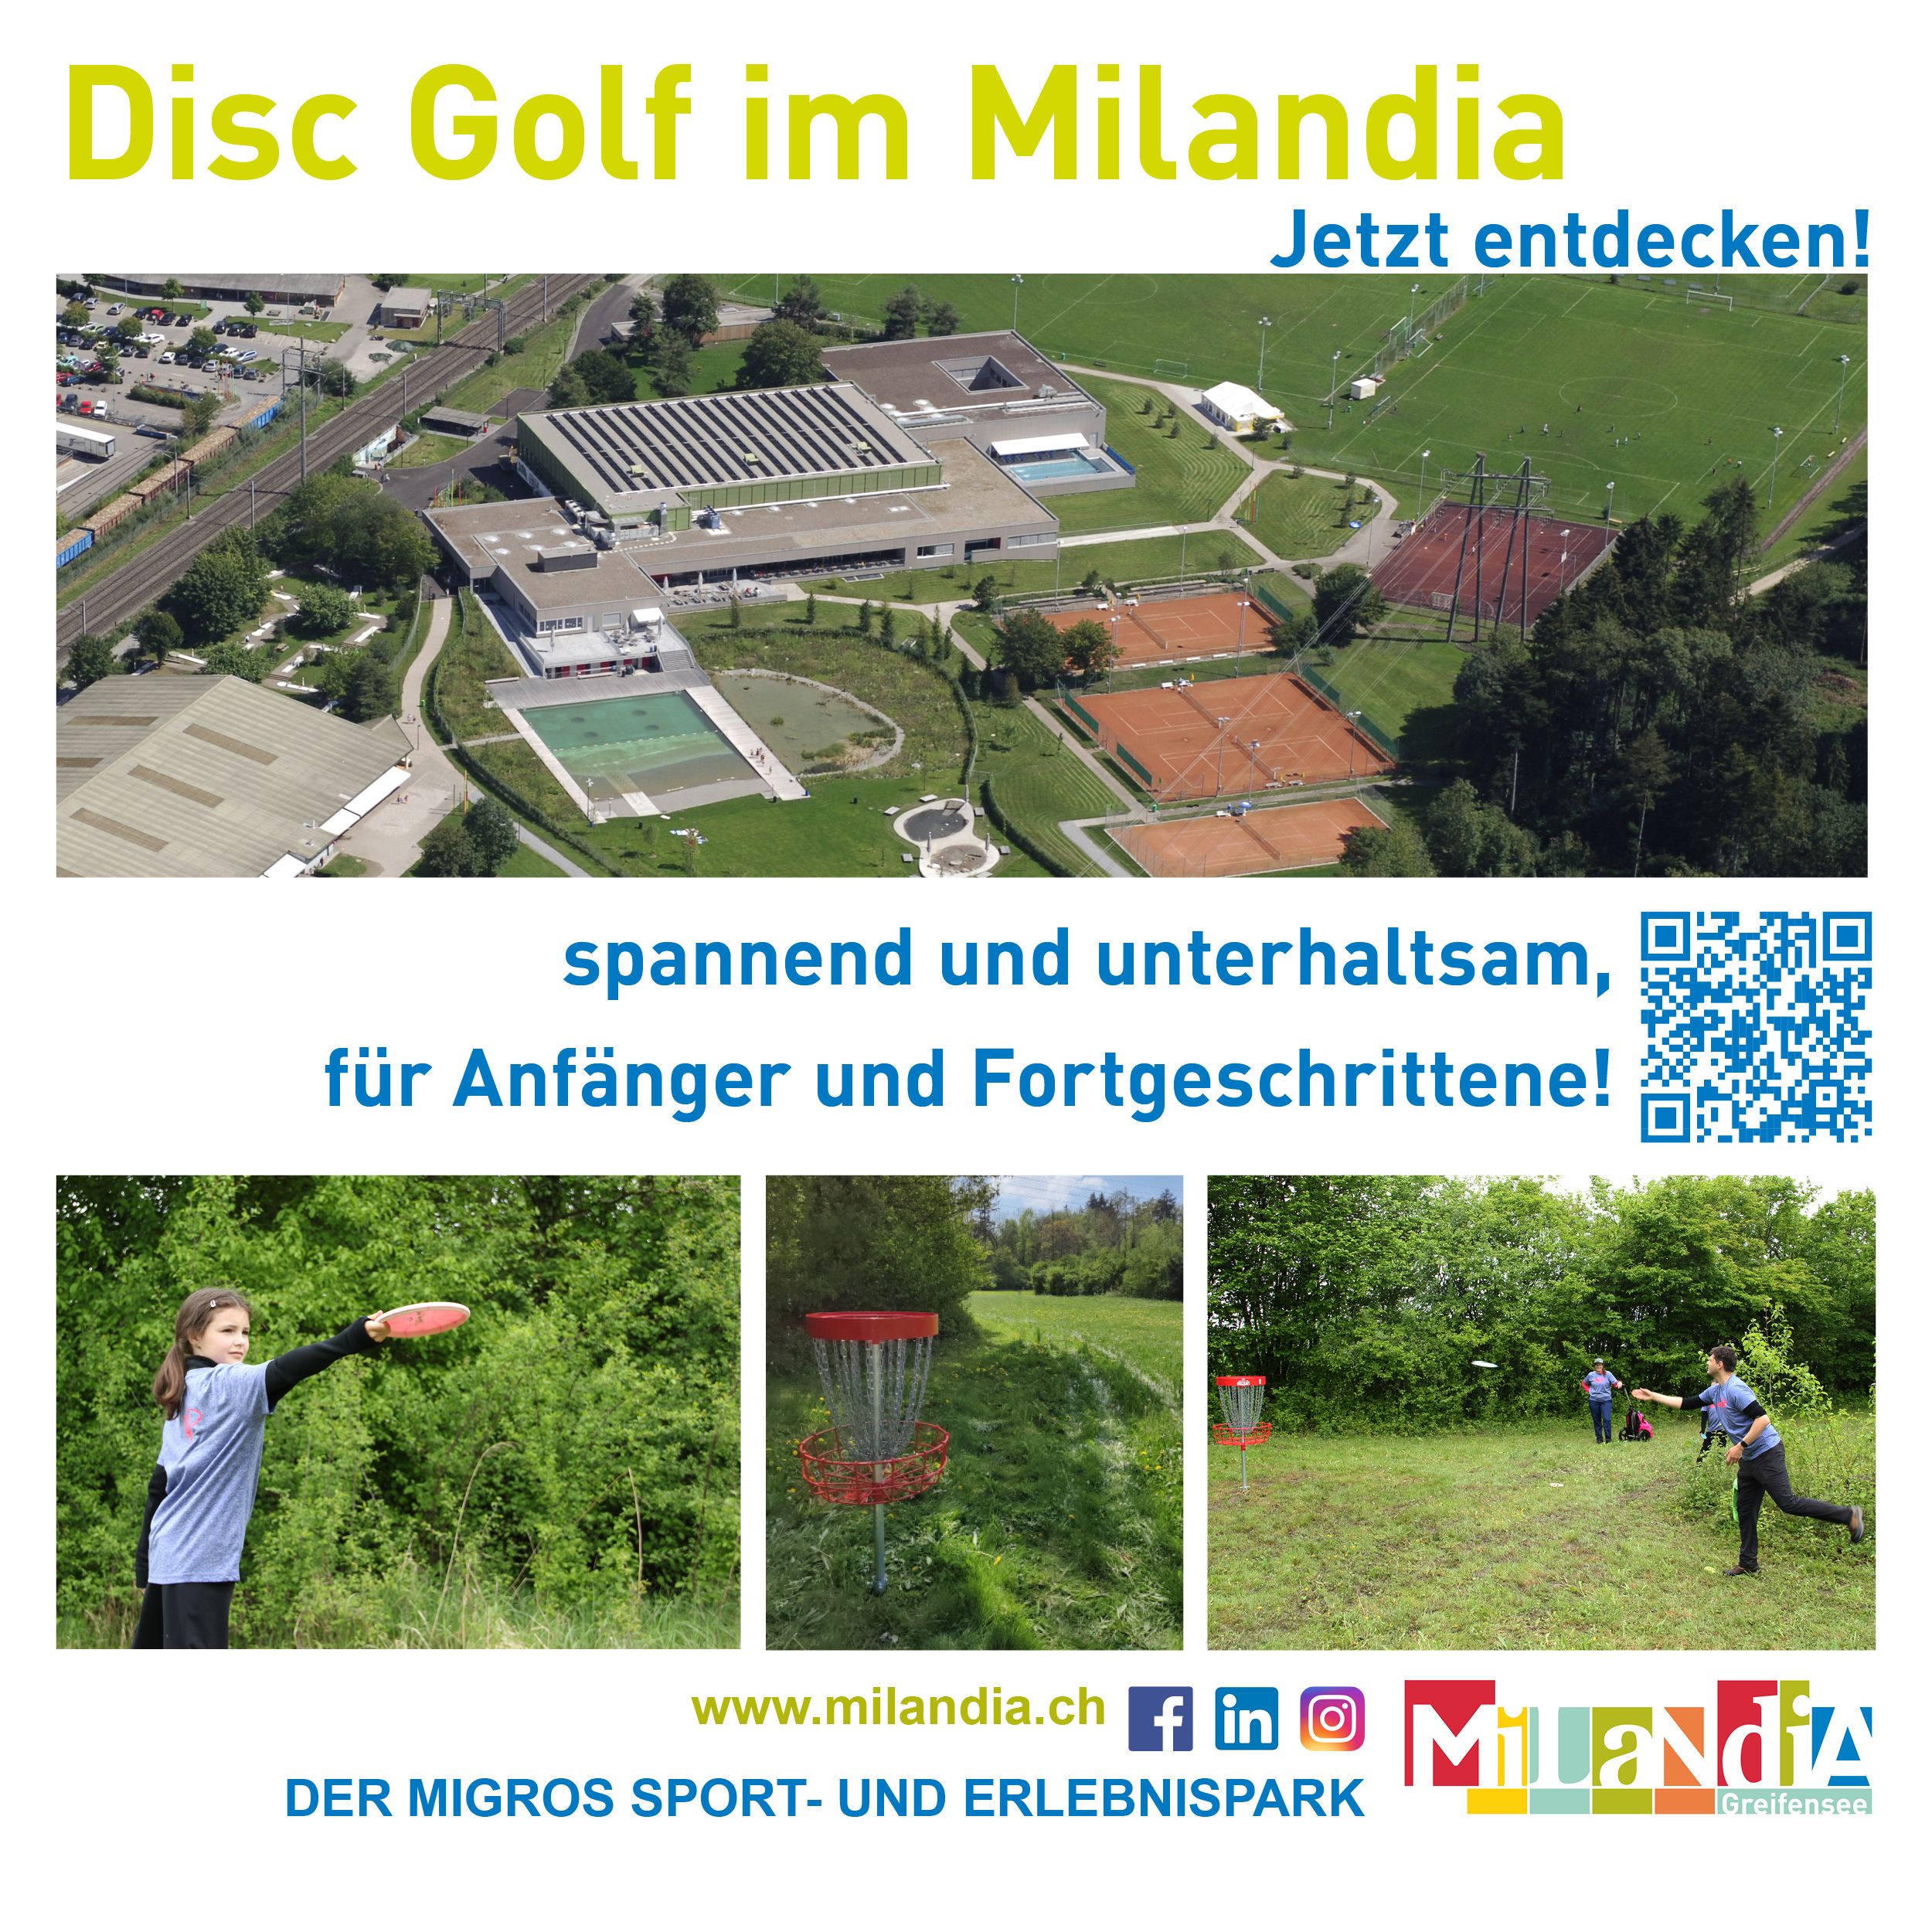 Disc Golf im Milandia